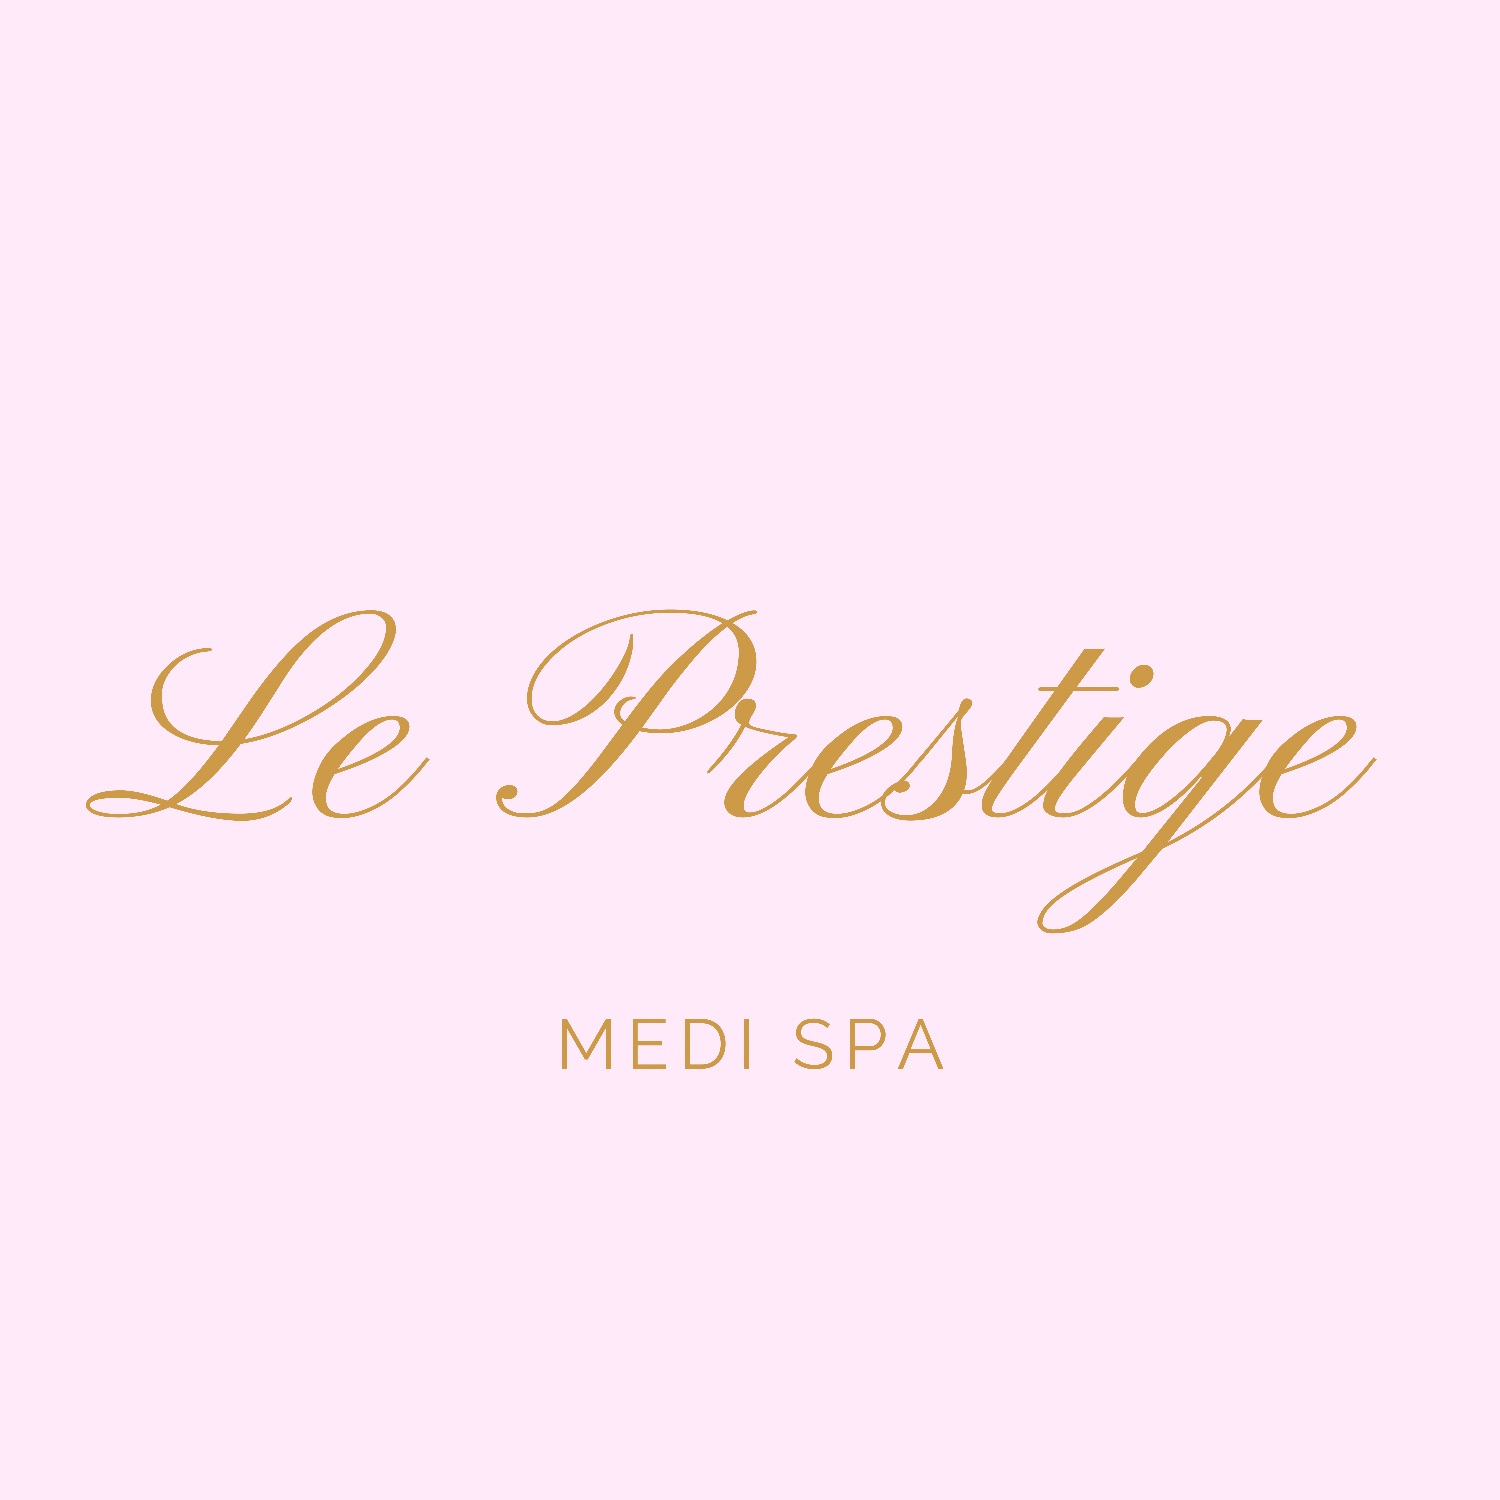 Le Prestige Medi Spa